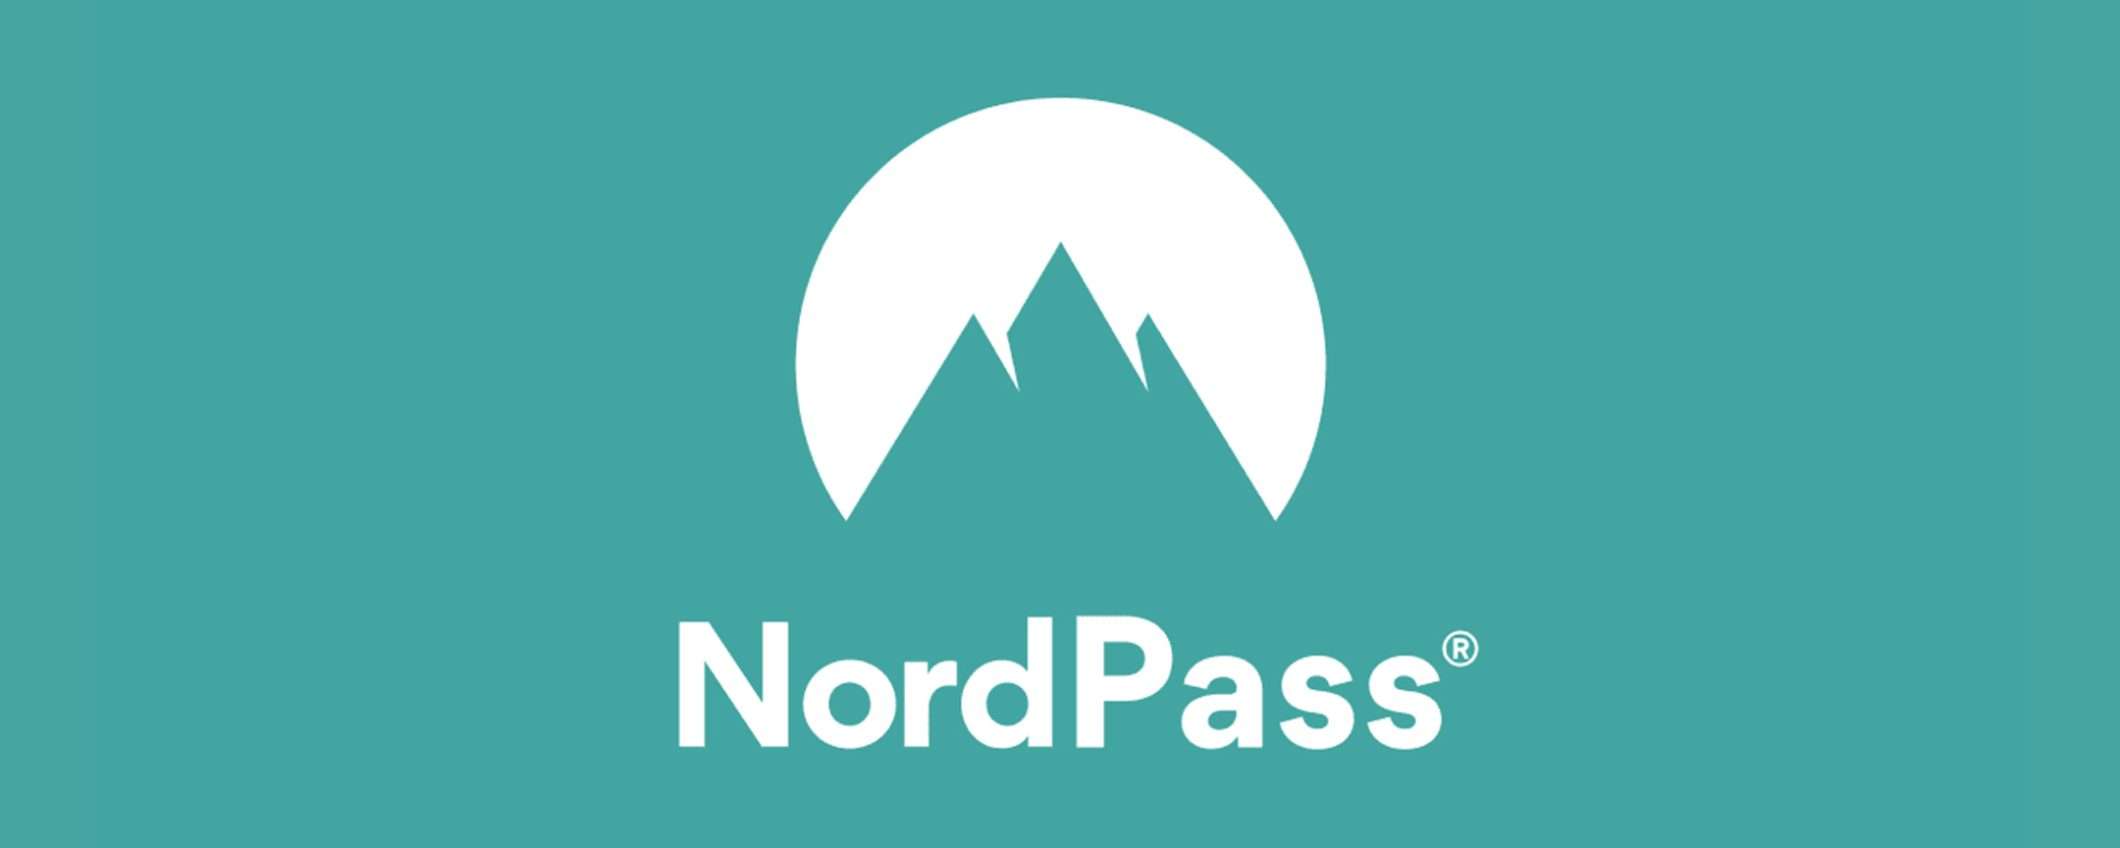 Metti al sicuro le tue password con NordPass  